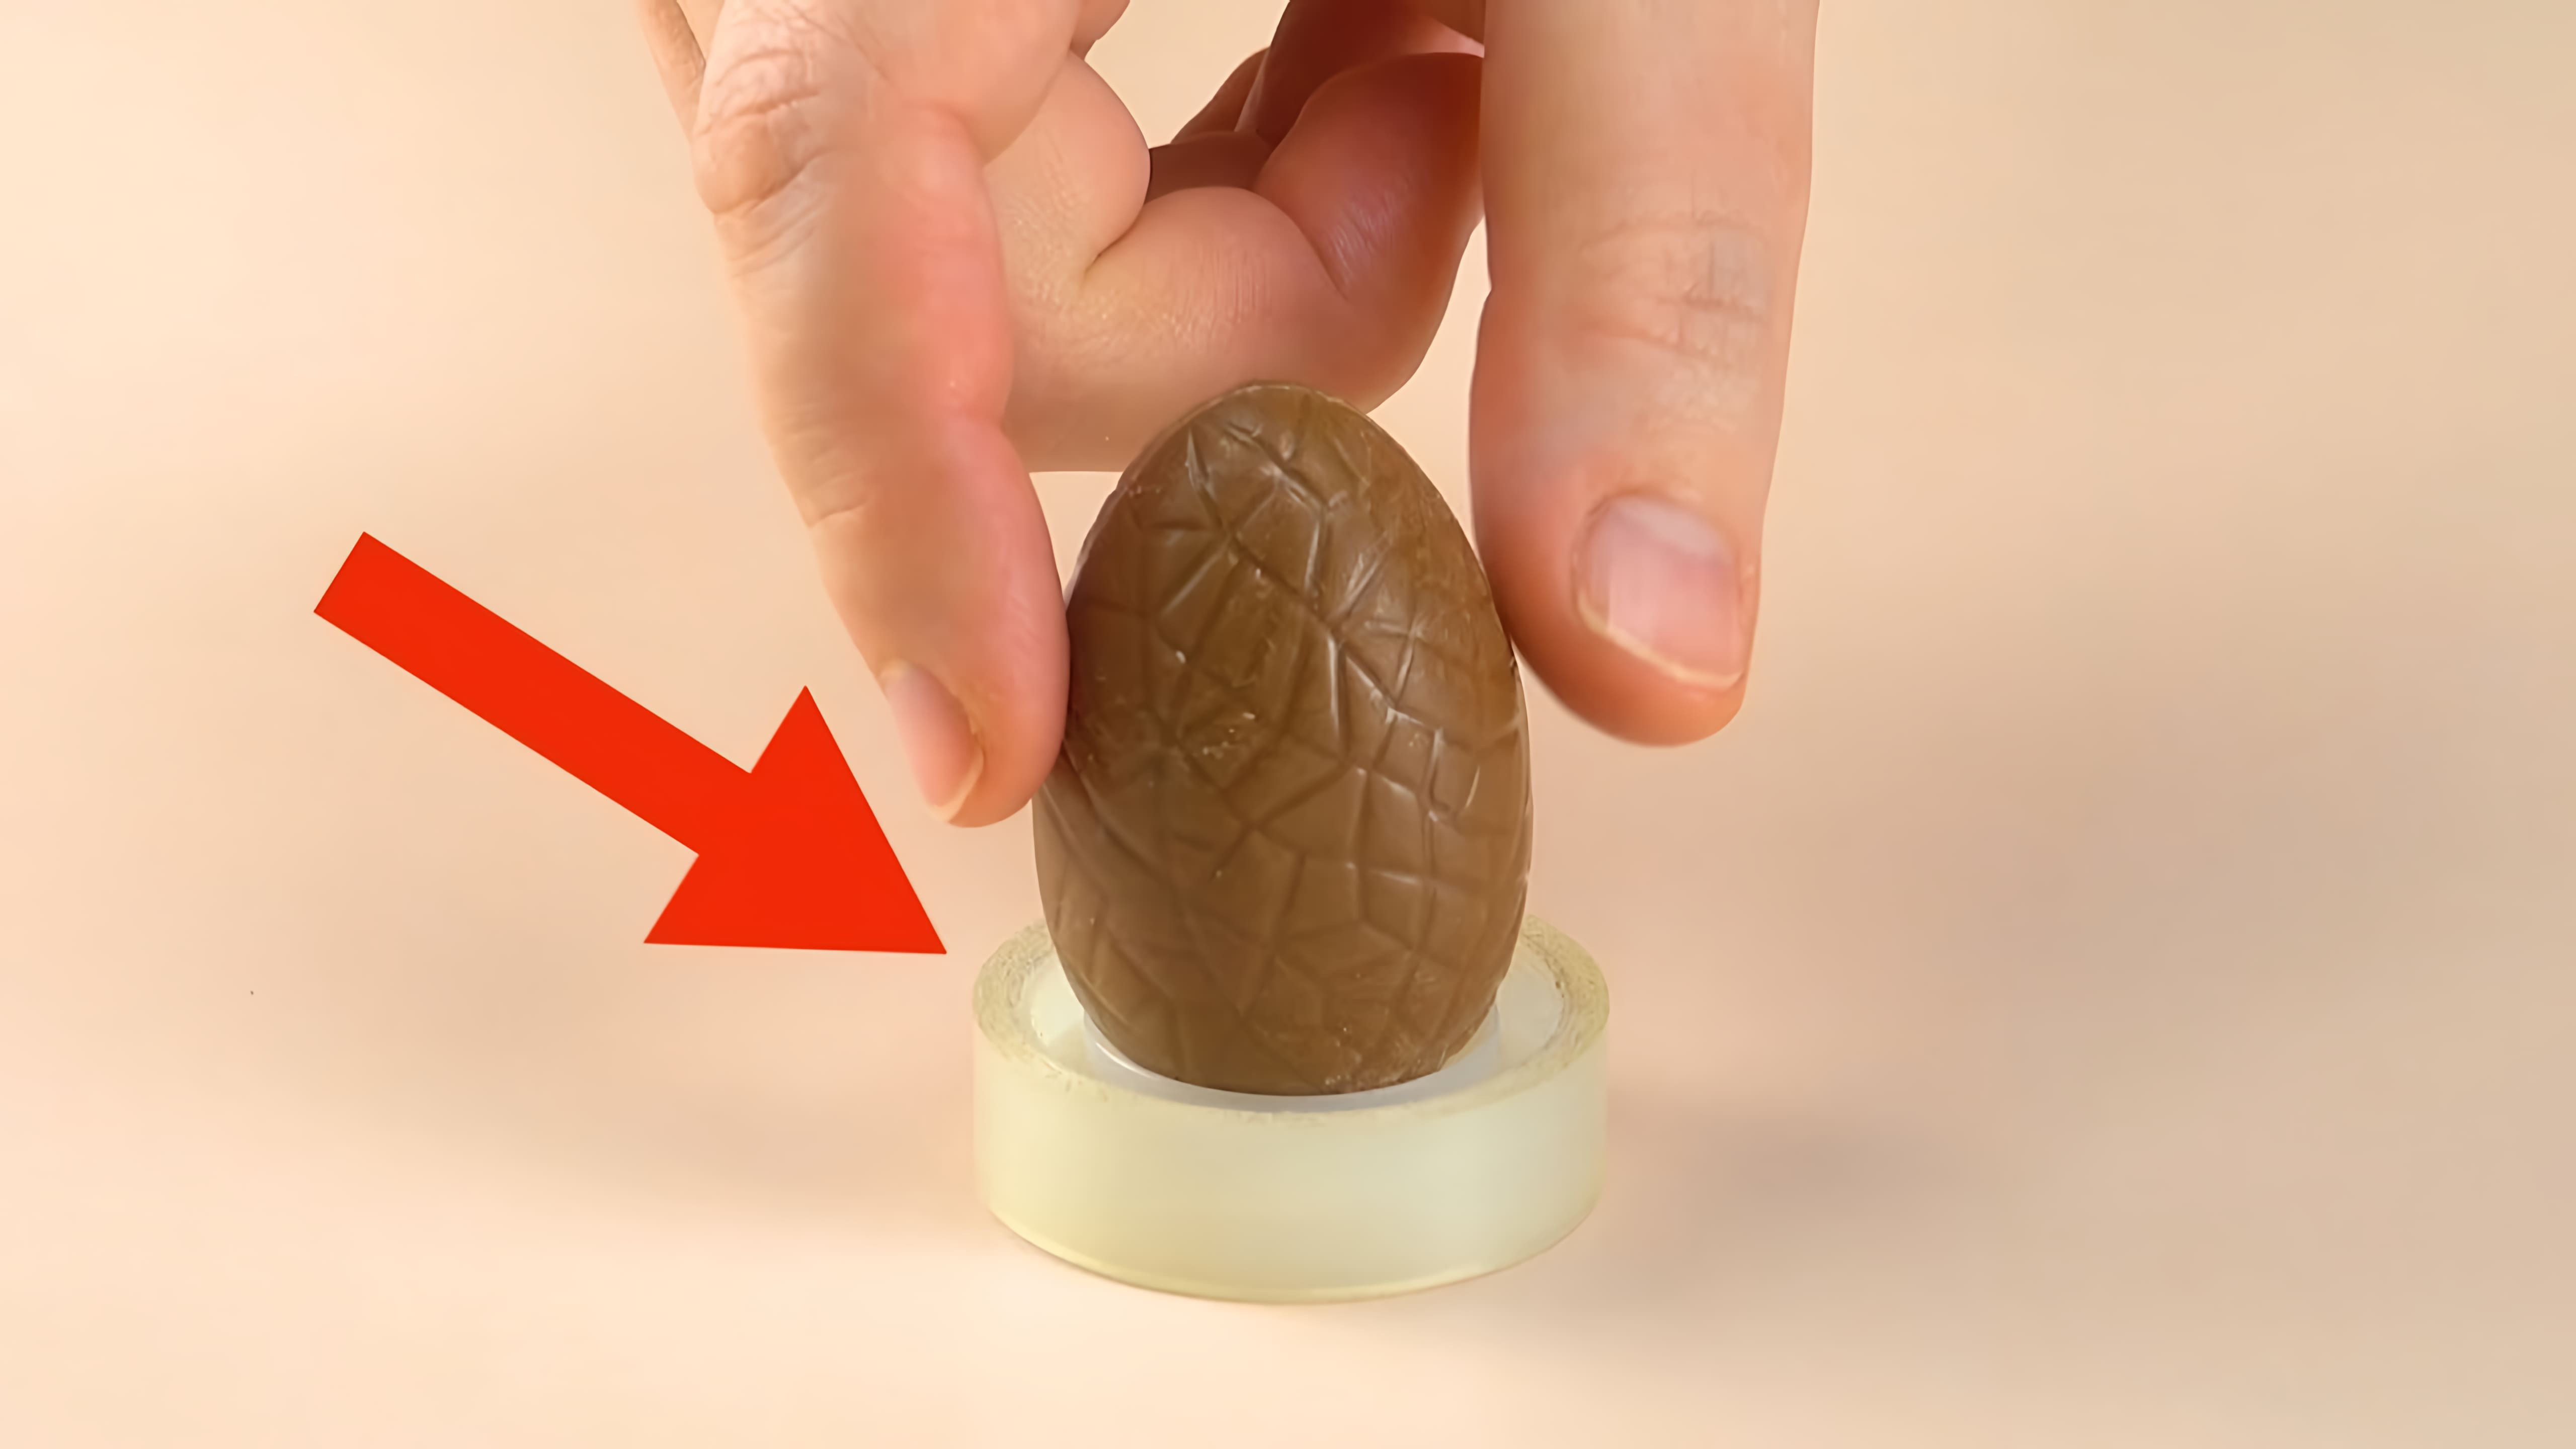 Видео: Ставим шоколадное яйцо на рулон изоленты. Этот десерт-само очарование!